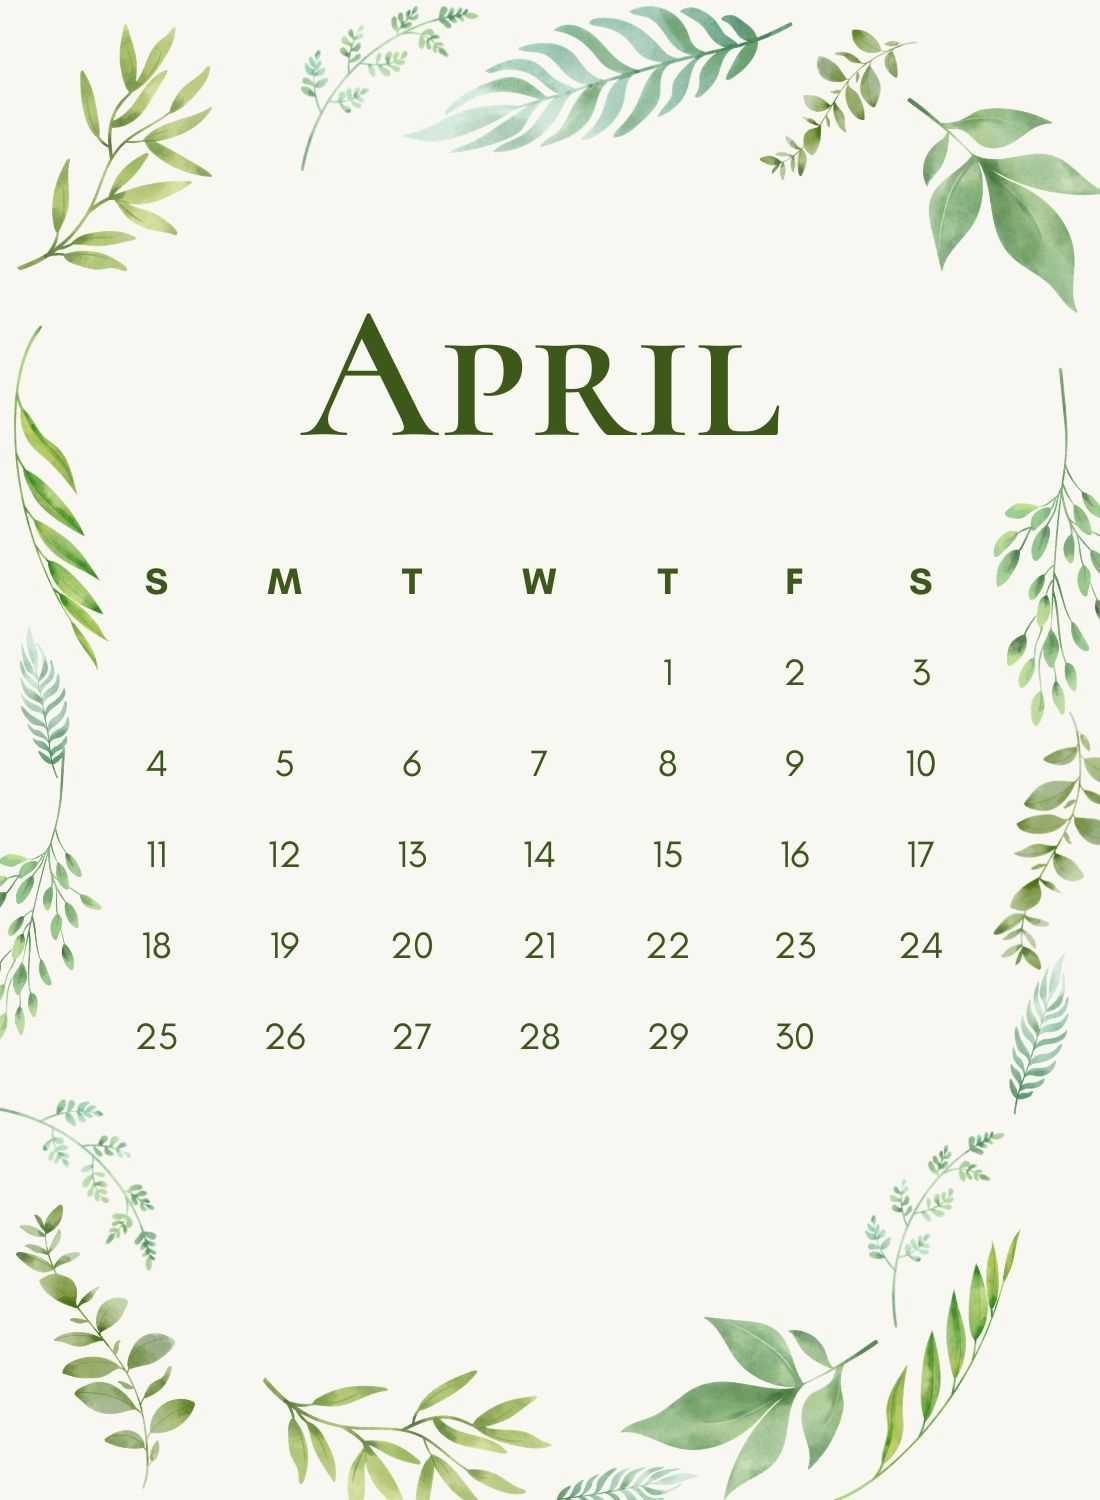 April 2021 Calendar Aesthetic Wallpaper Drawquack